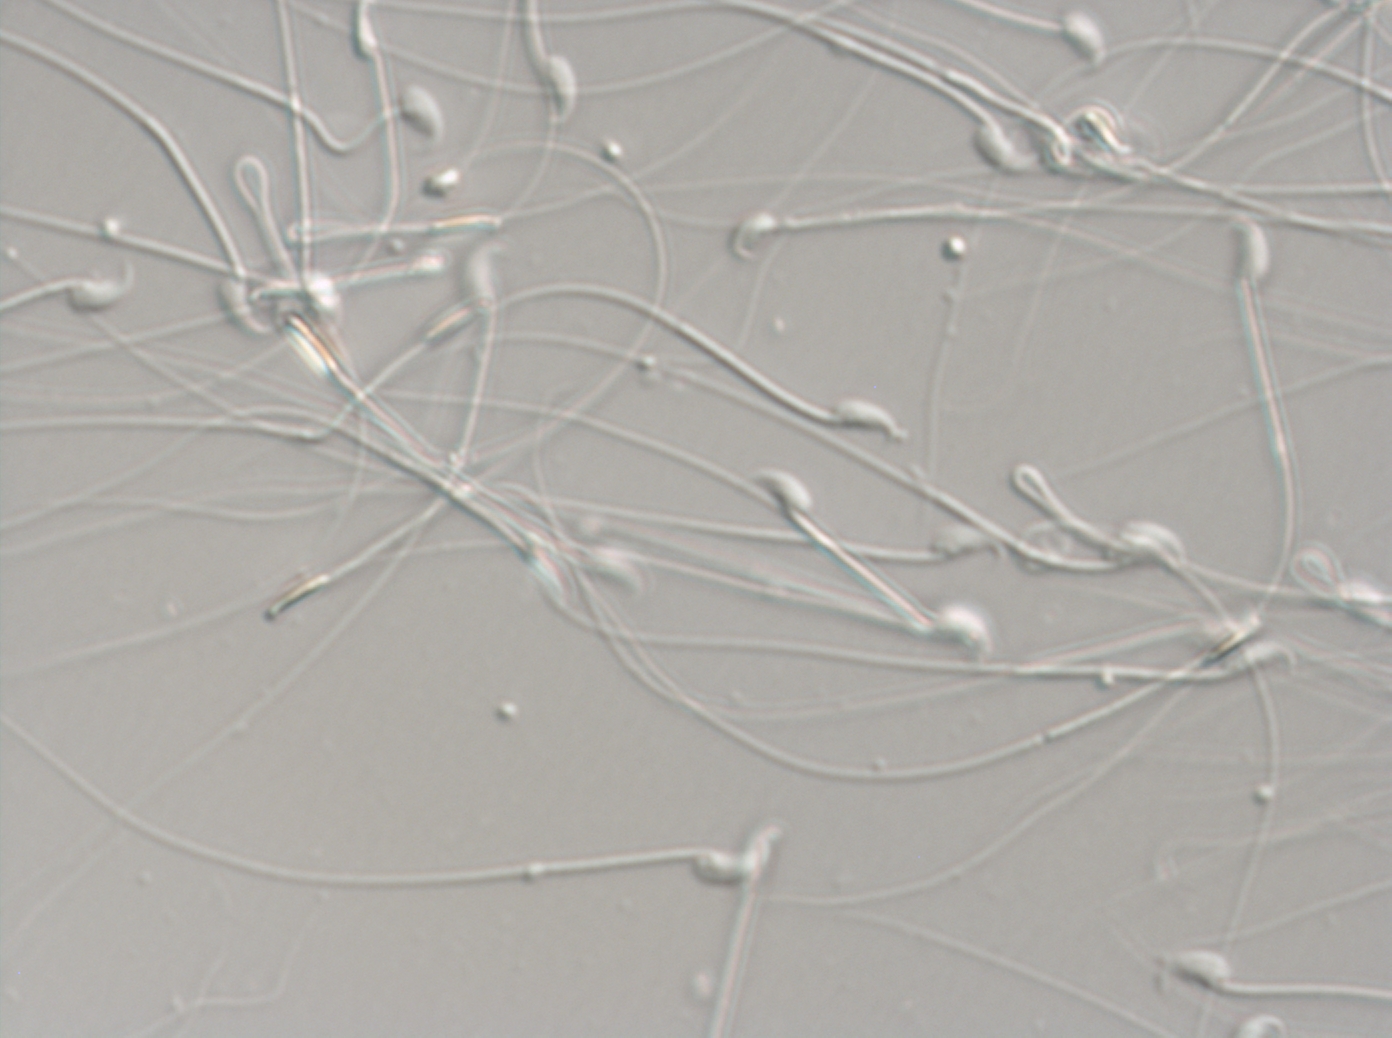 Detalle de espermatozoides de ratón